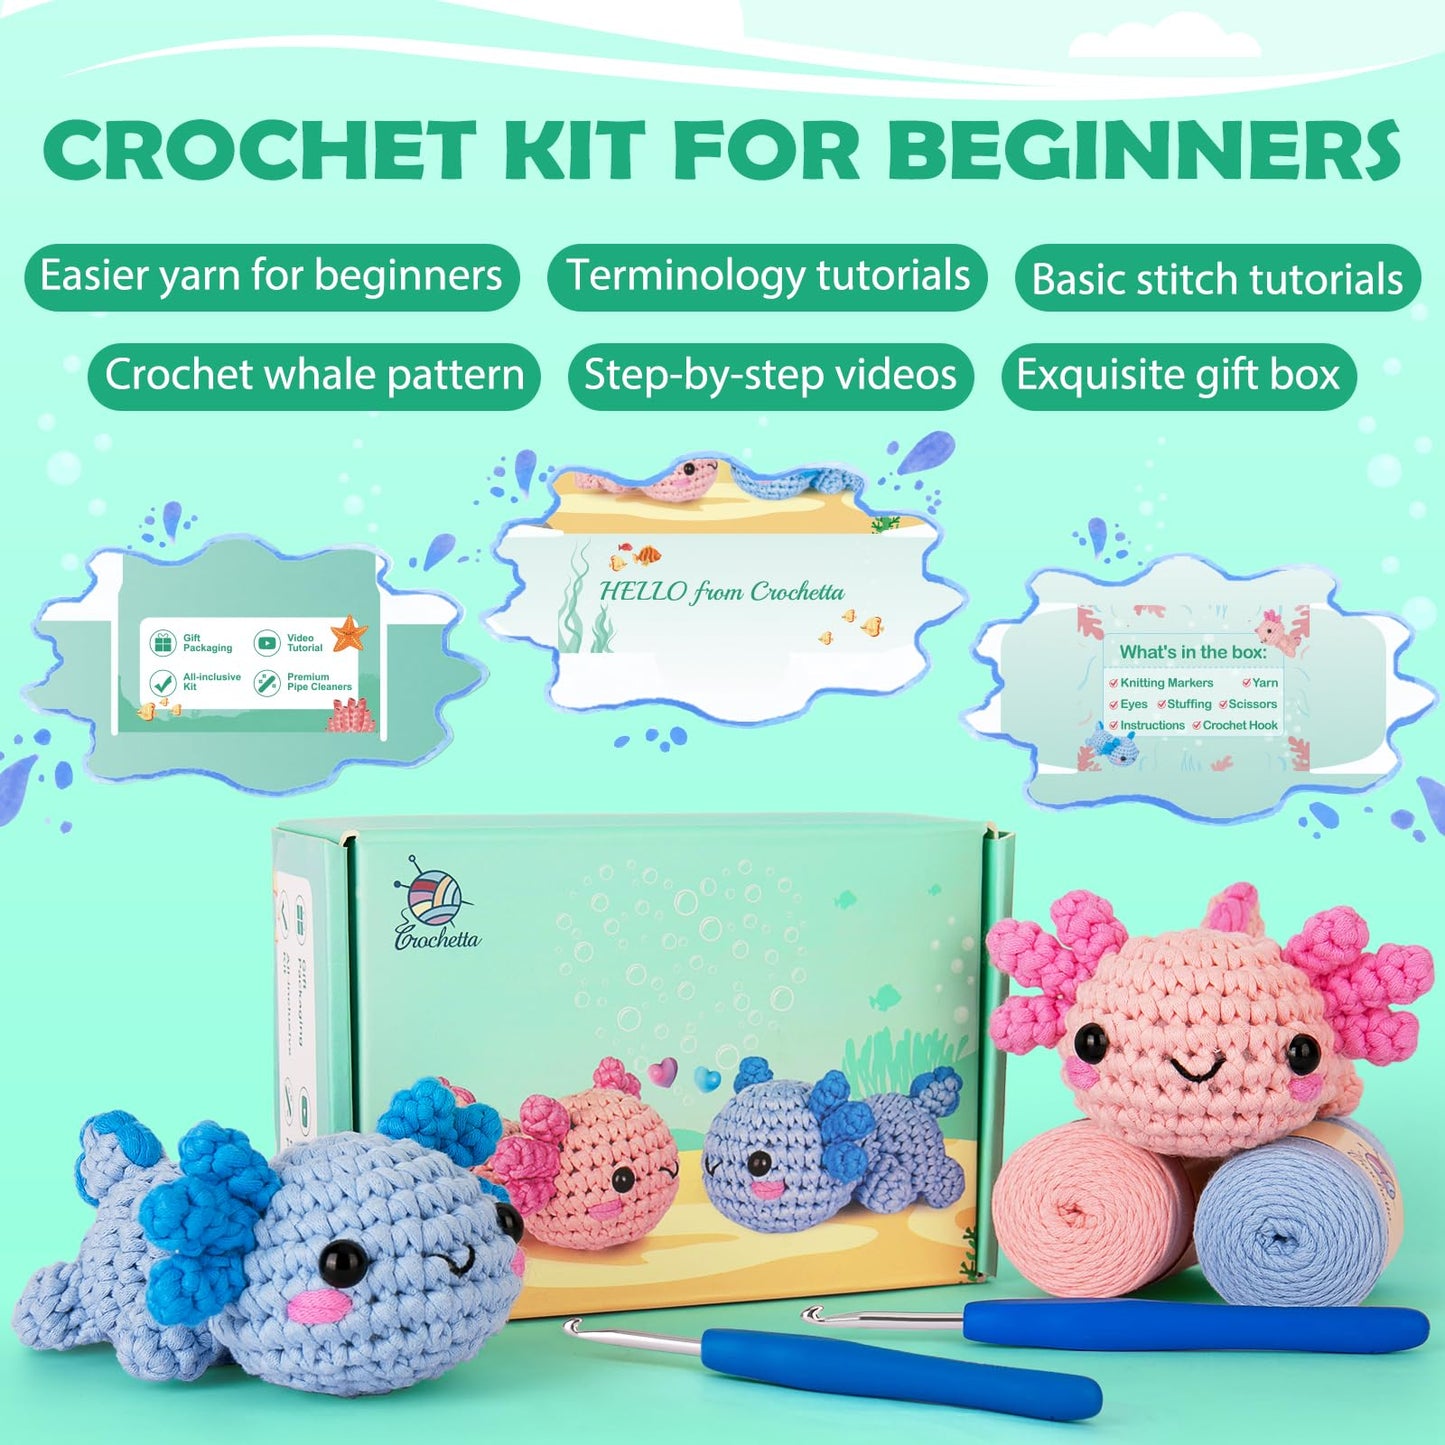 Crochet Kit for Beginner, Crochet Starter Kit w Step-by-Step Video Tutorials, Crochet Kit for Beginners, Beginner Crochet Kit for Adults Kids Women